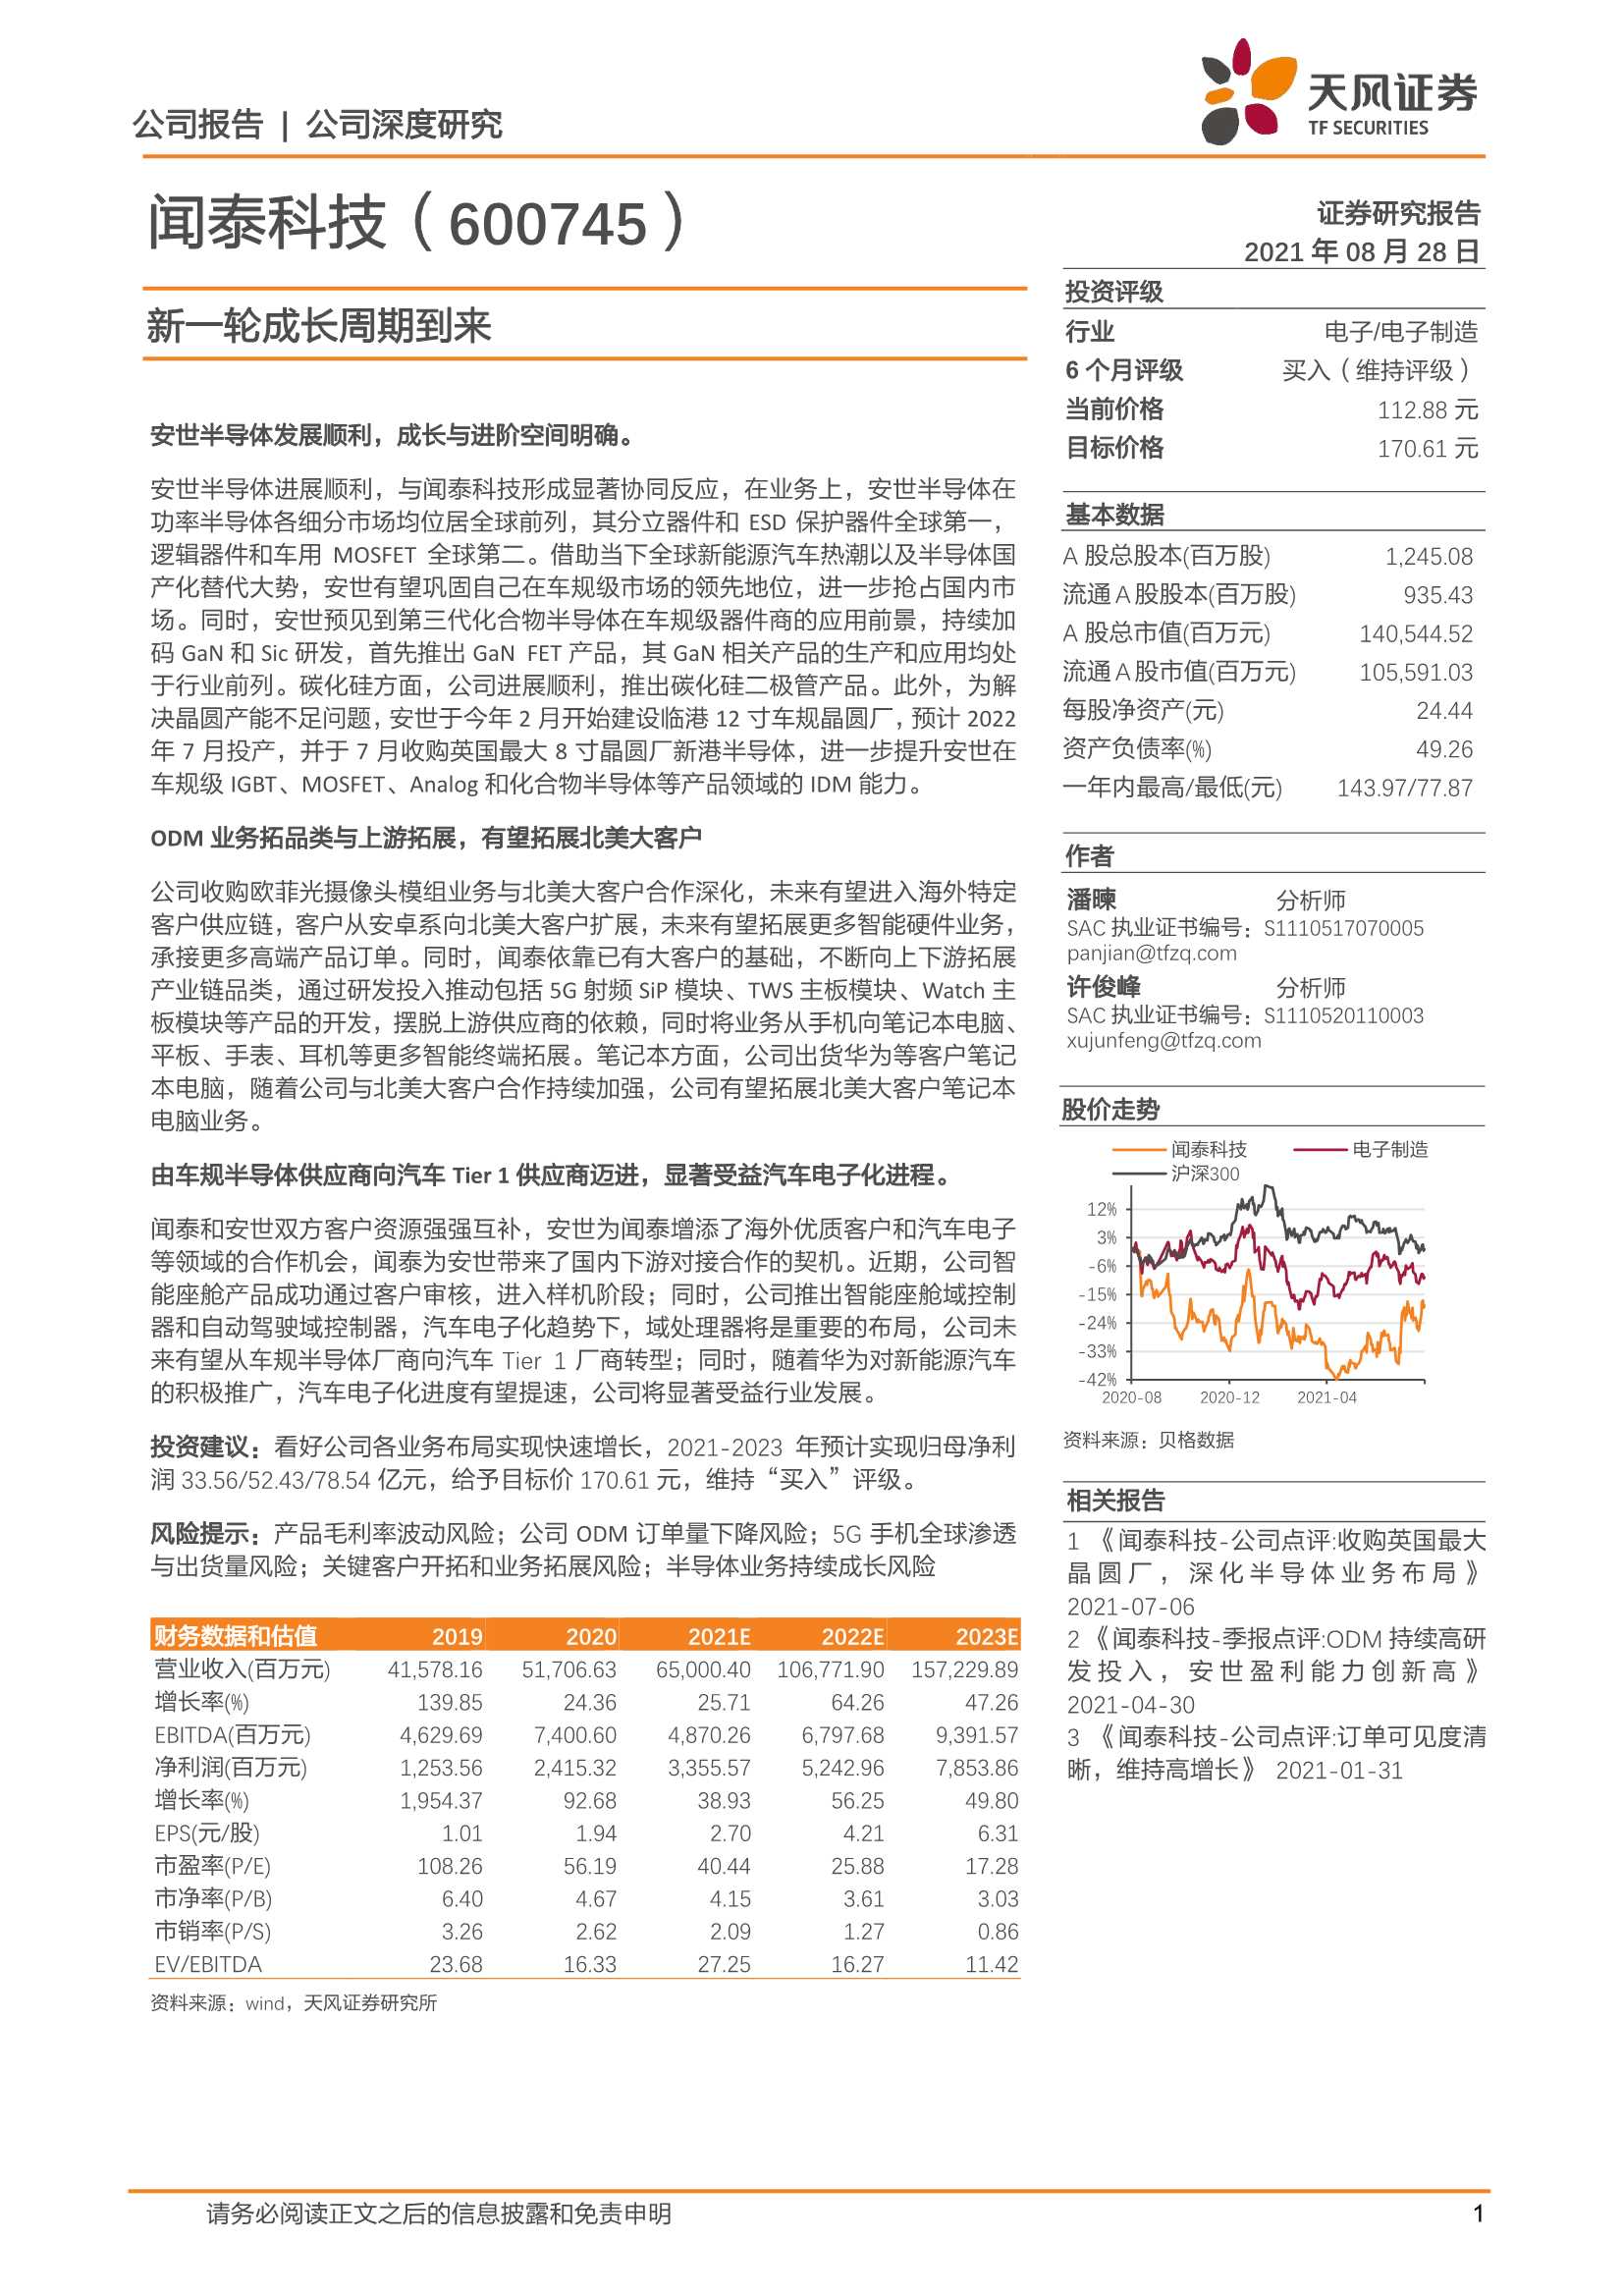 天风证券-闻泰科技-600745-新一轮成长周期到来-20210828-37页